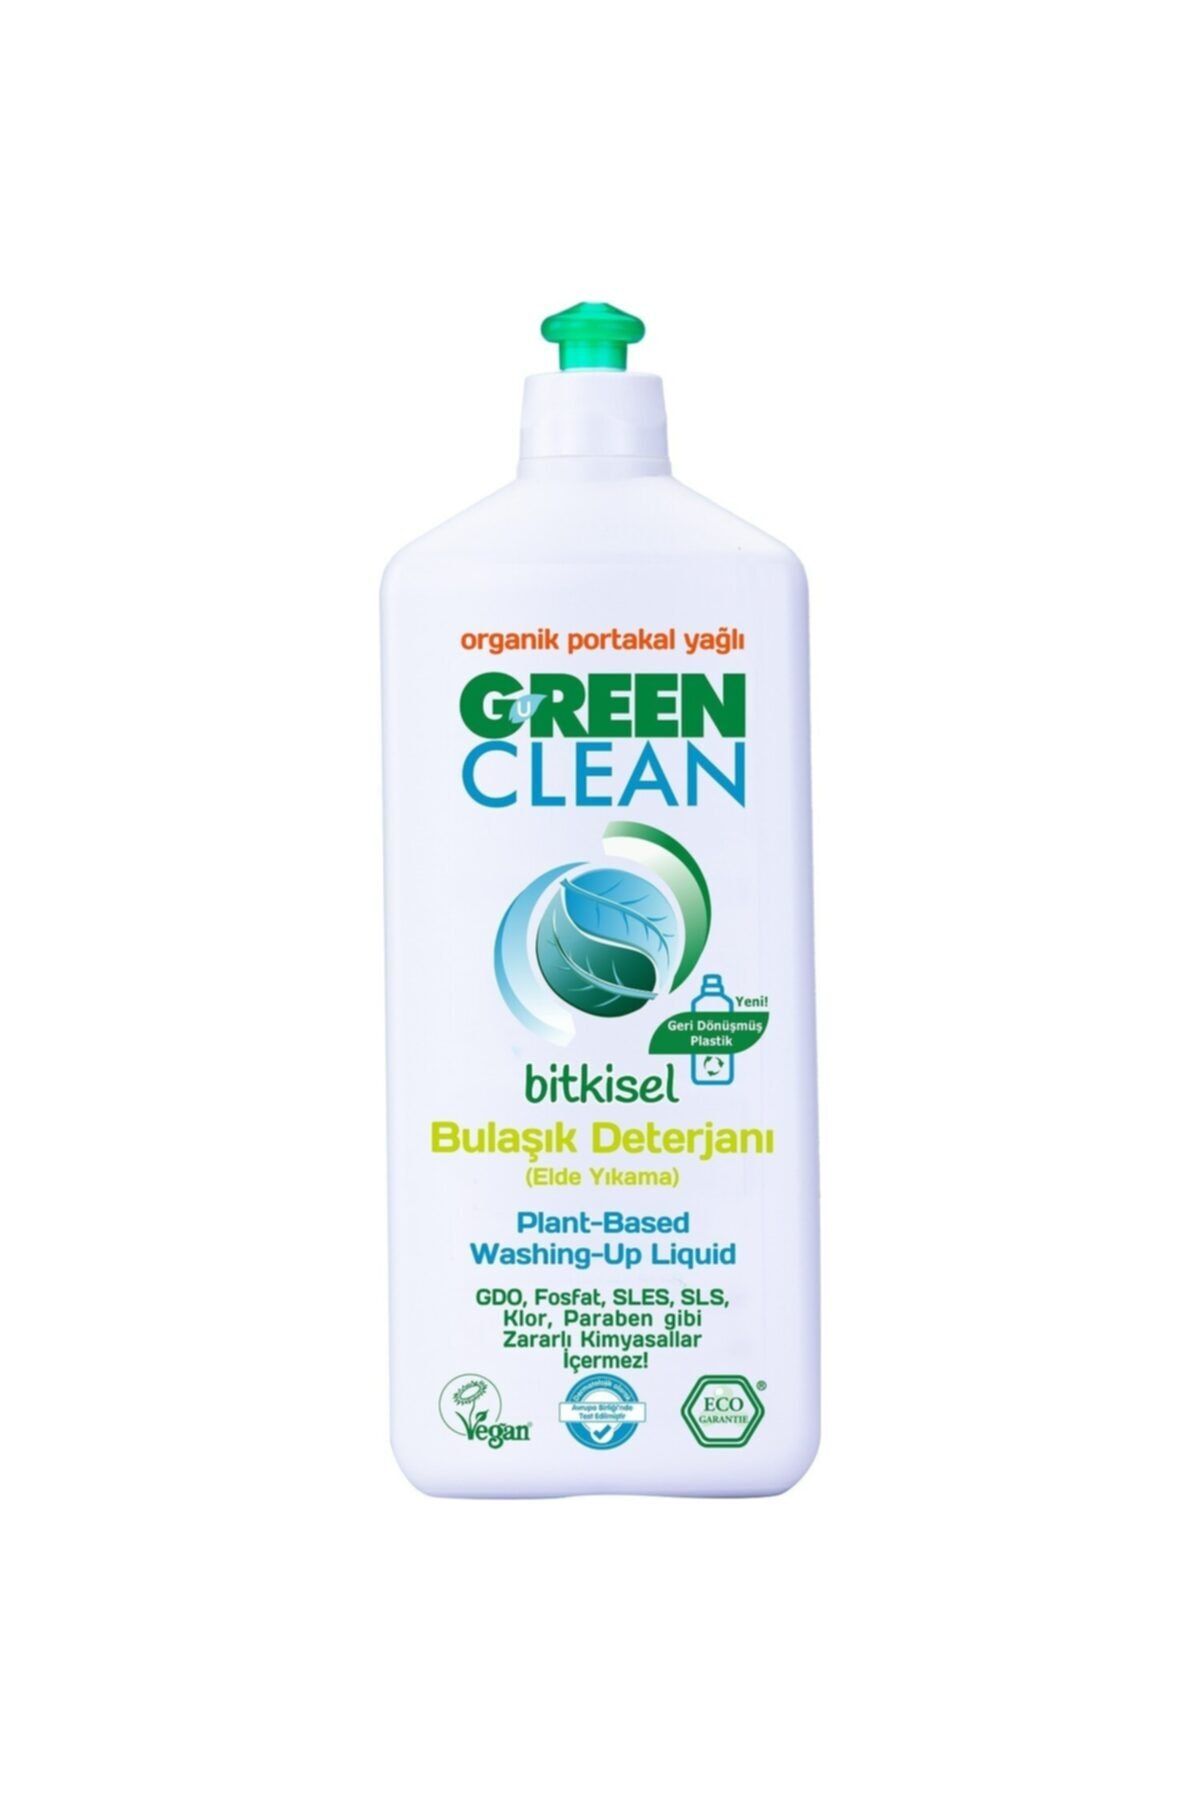 Green Clean U Organik Portakal Yağlı Bulaşık Deterjanı 730 Ml